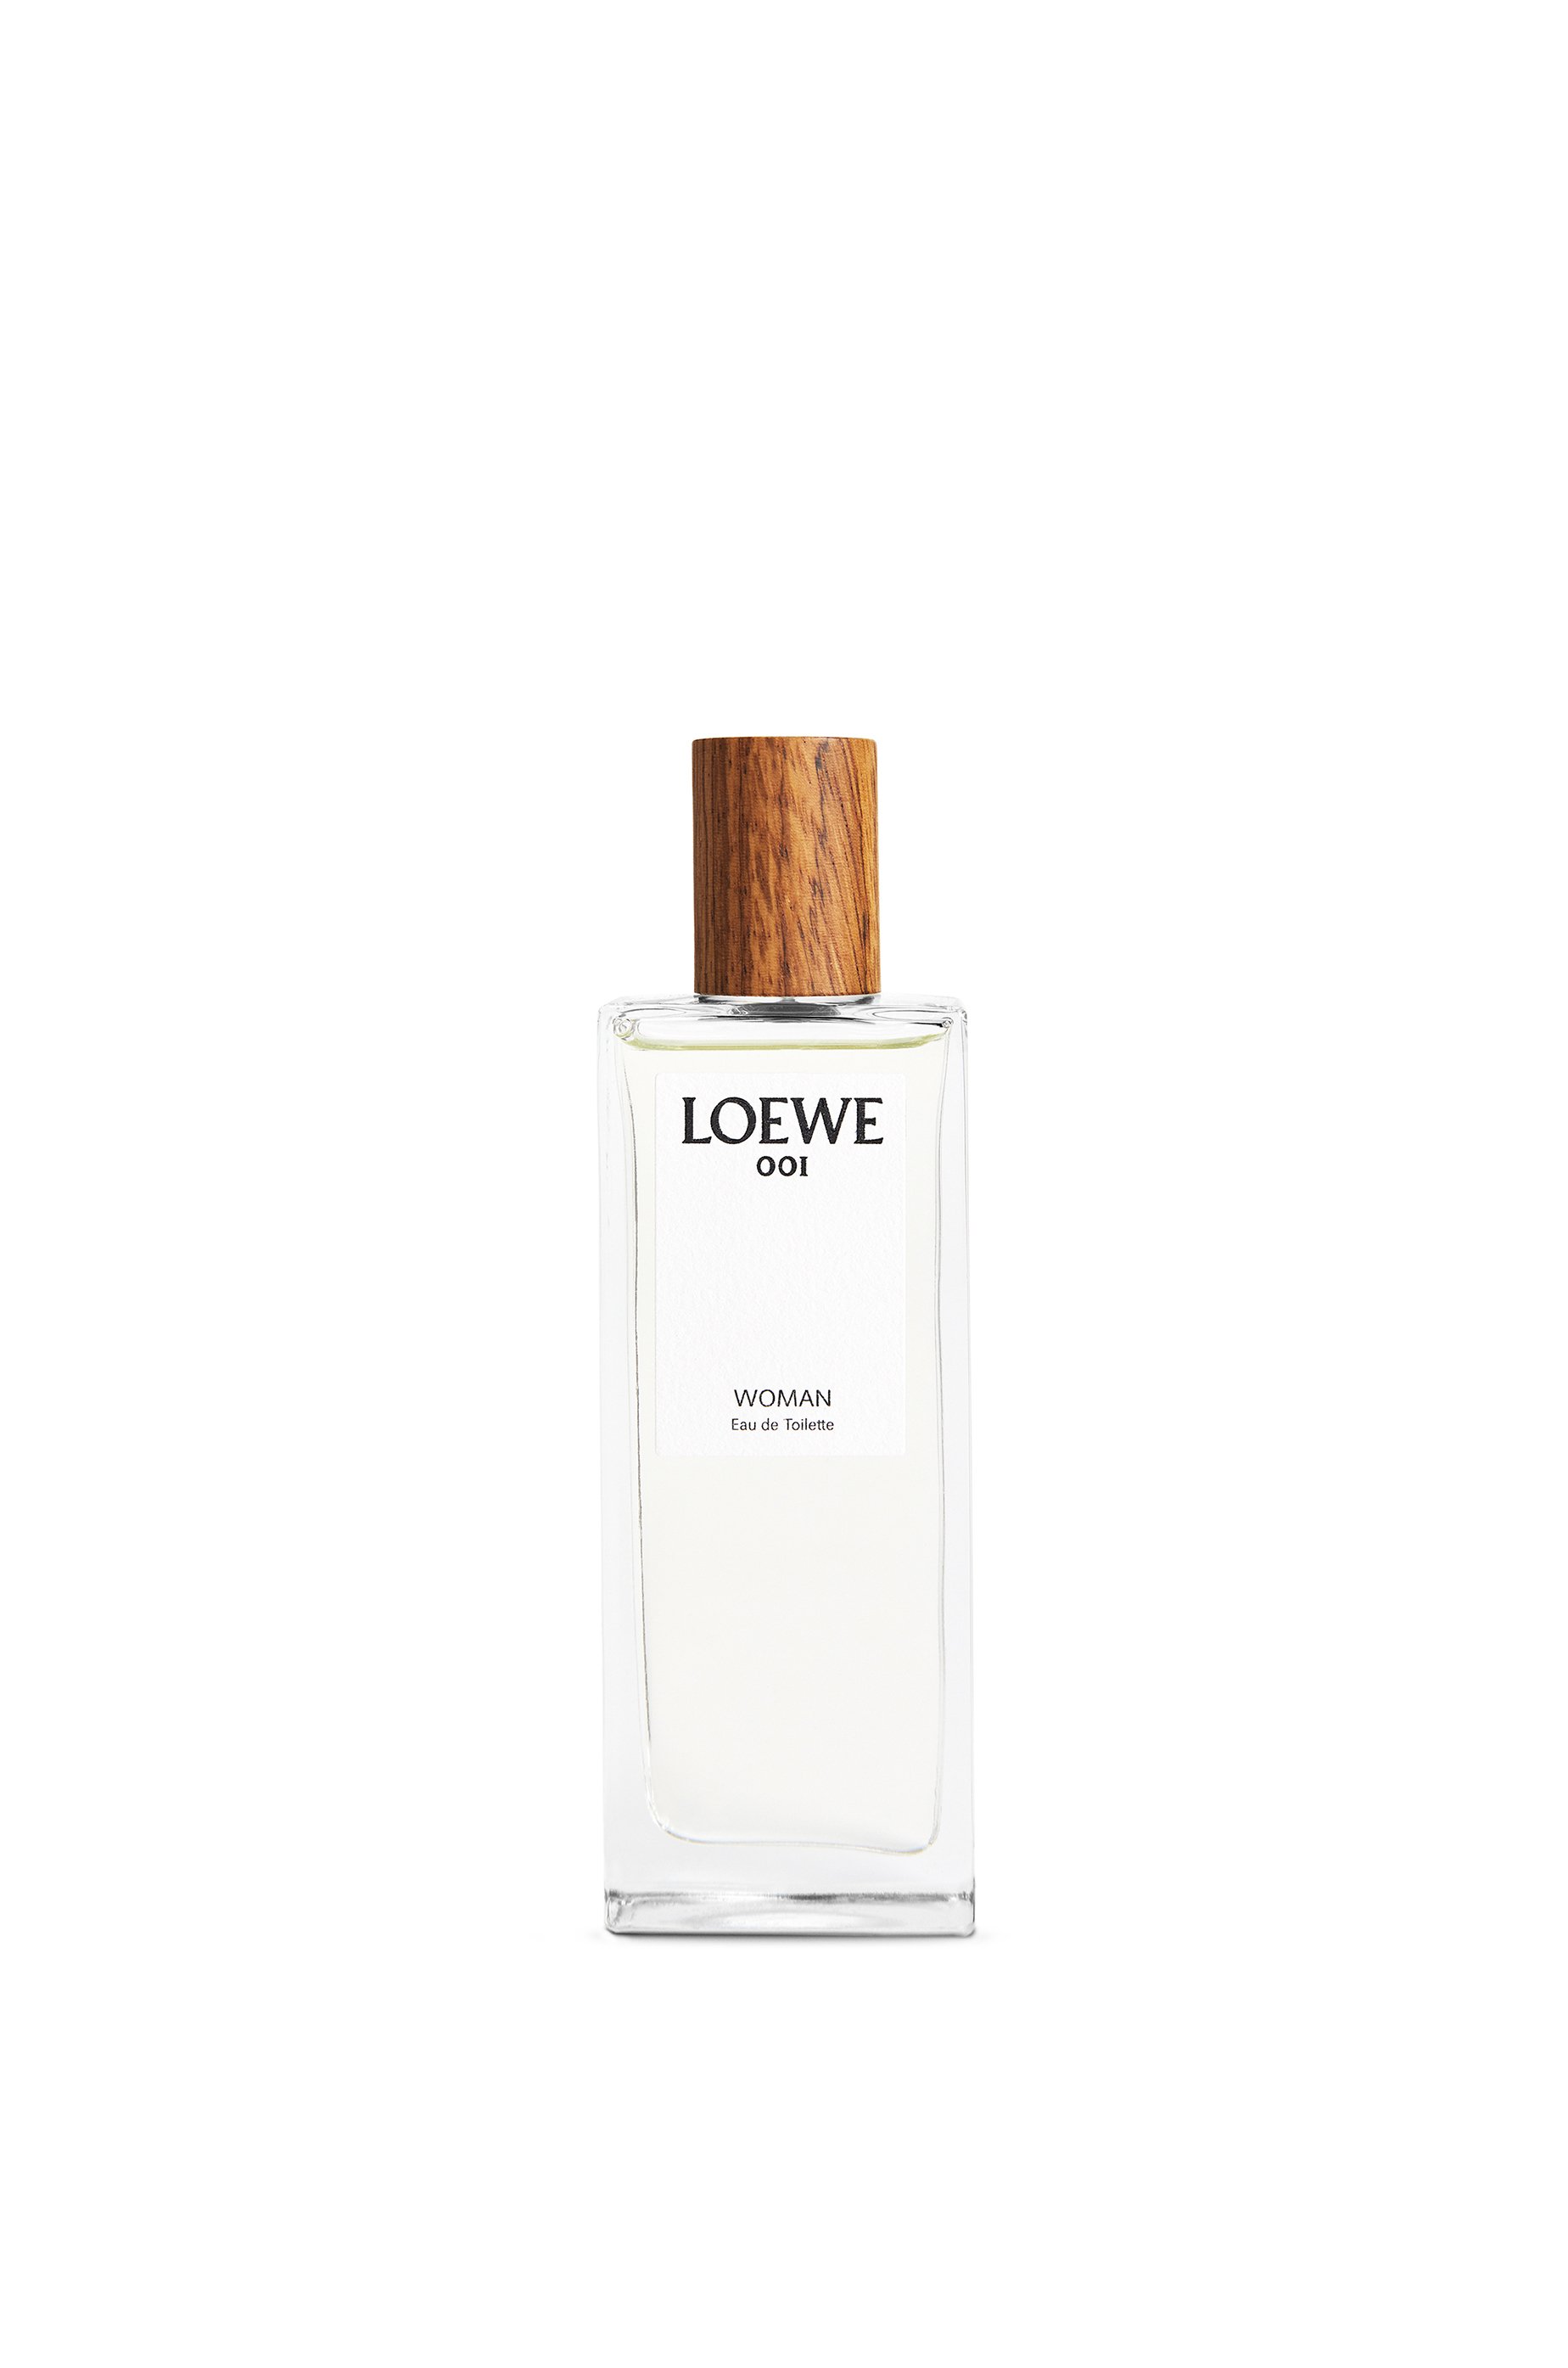 Loewe 001 女士淡香水50ml - LOEWE